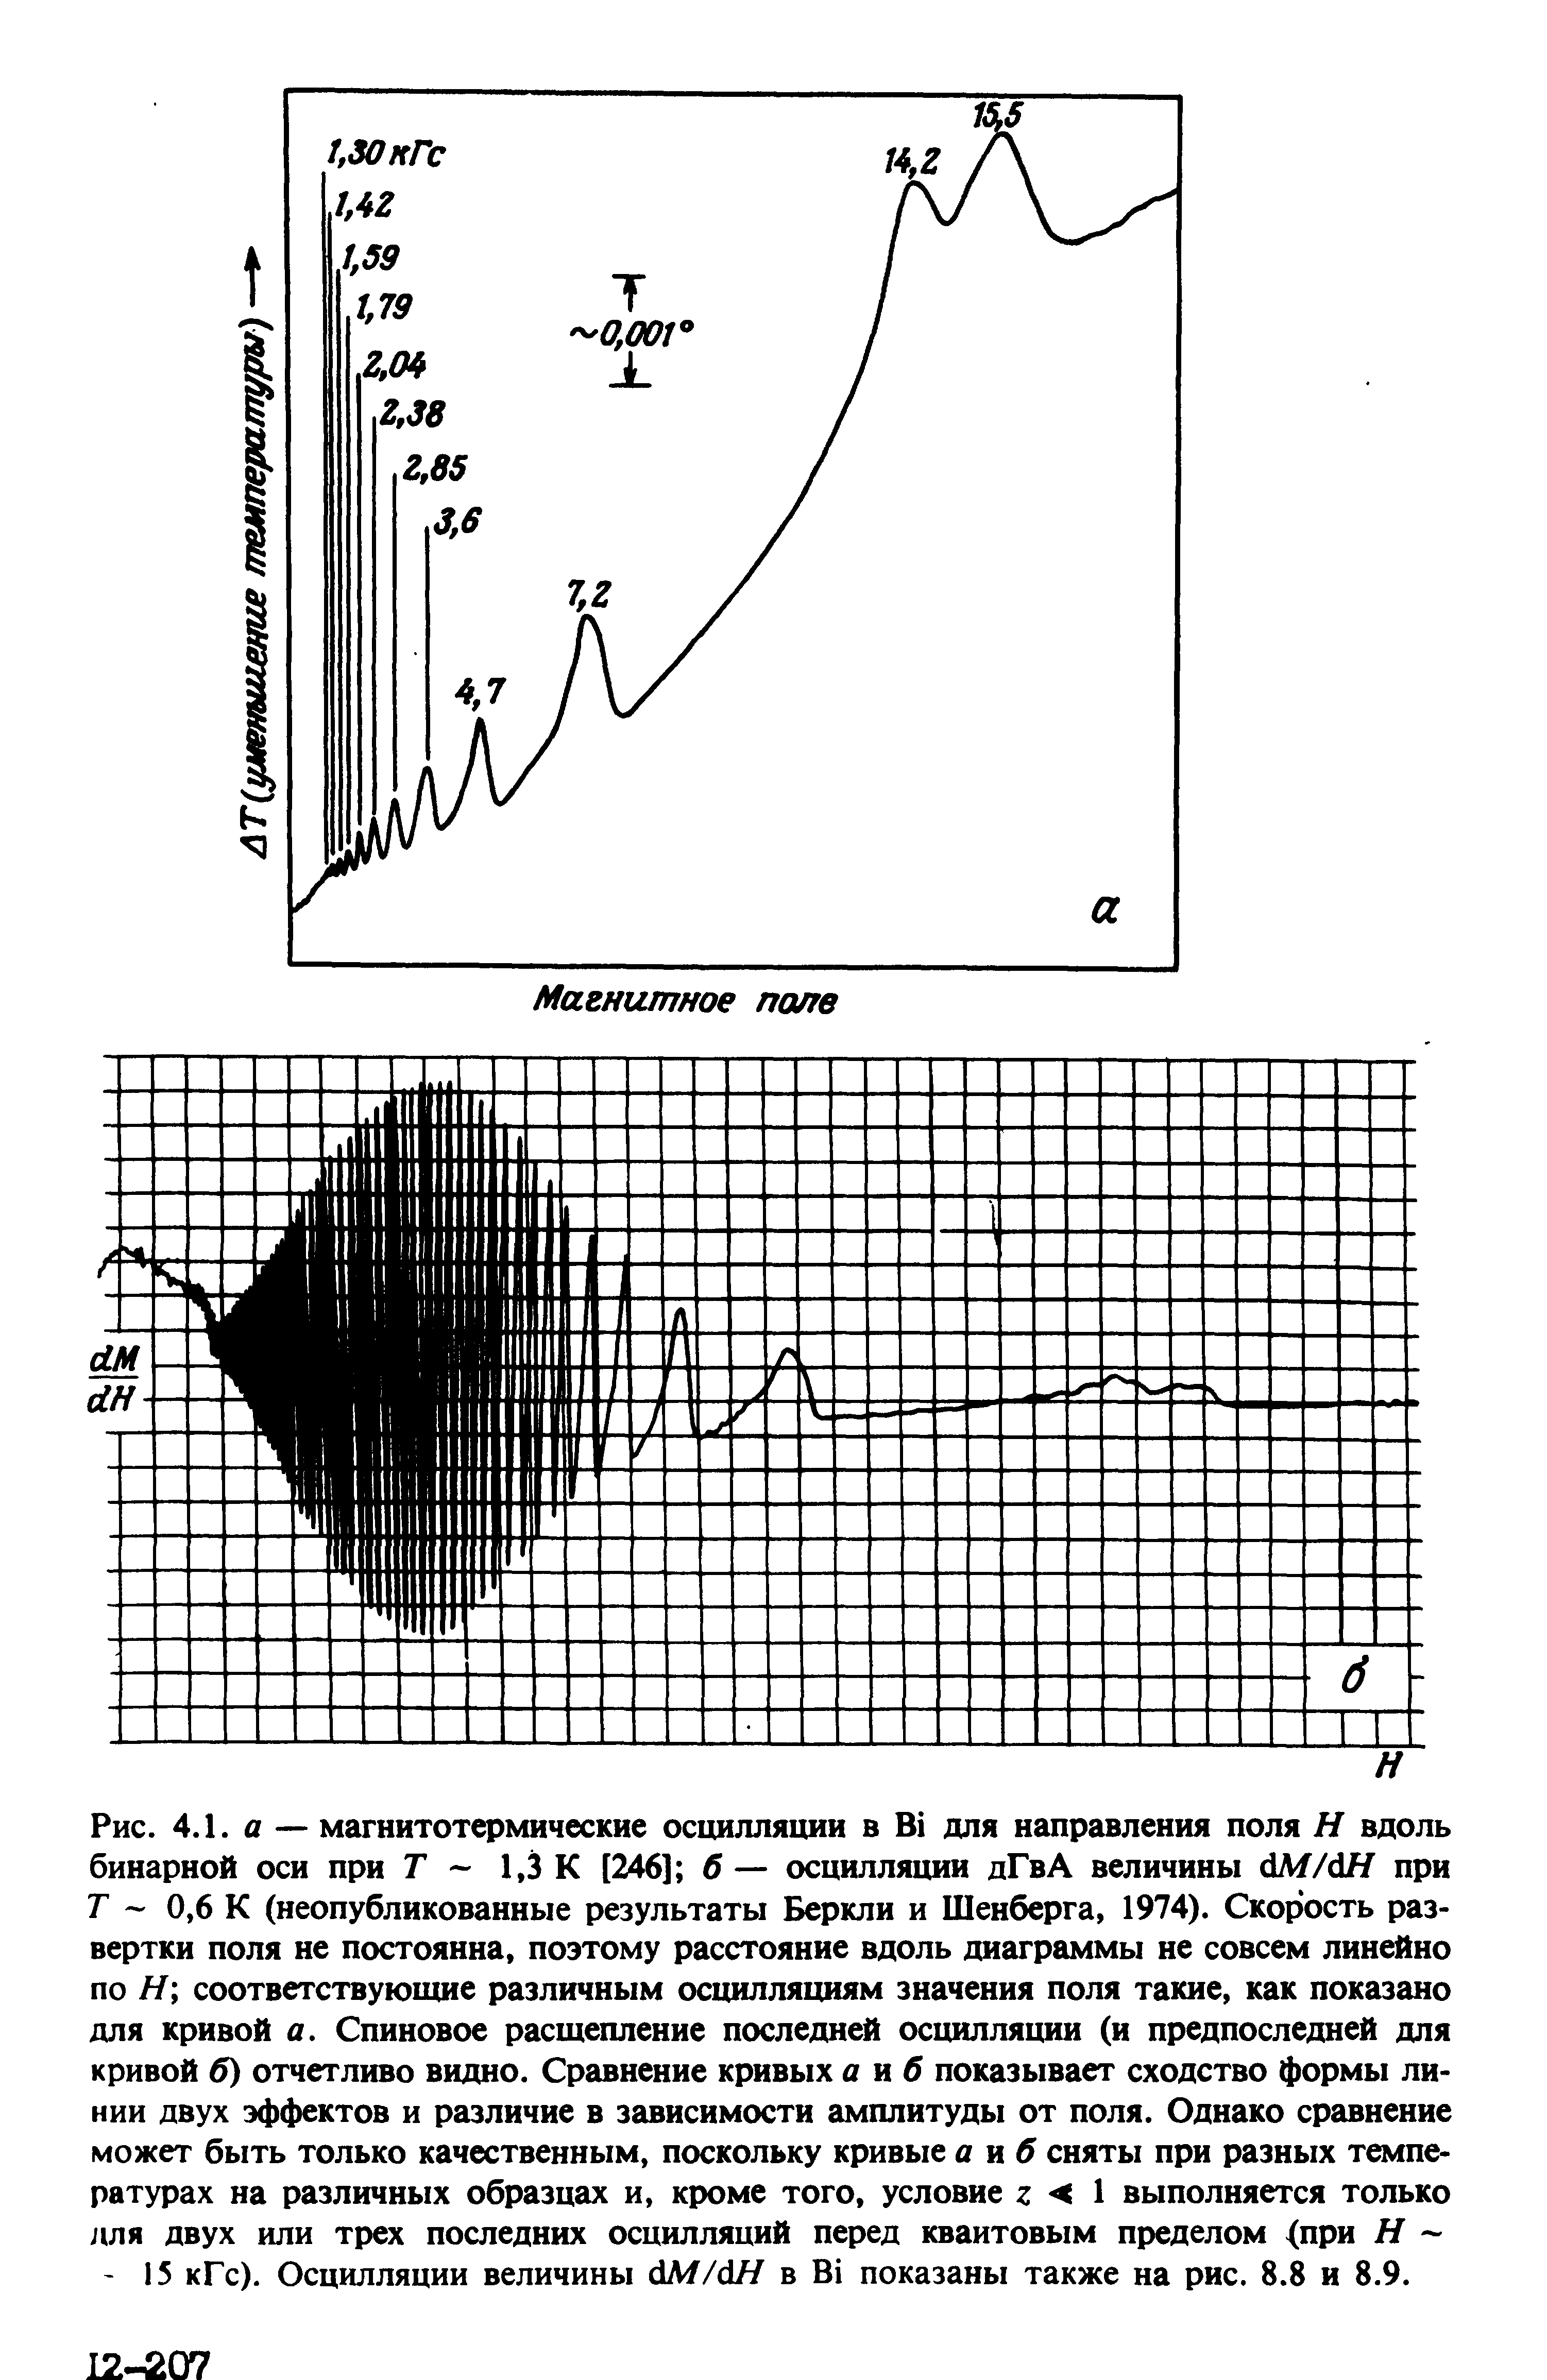 Рис. 4.1. А — магнитотермические осцилляции в В для направления поля Н вдоль бинарной оси при Г 1,3 К [246] б — осцилляции дГвА величины М/дН при Г - 0,6 К (неопубликованные результаты Беркли и Шенберга, 1974). Скорость развертки поля не постоянна, поэтому расстояние вдоль диаграммы не совсем линейно по Я соответствующие различным осцилляциям значения поля такие, как показано для кривой а. Спиновое расщепление последней осцилляции (и предпоследней для кривой б) отчетливо видно. Сравнение кривых а иб показывает сходство формы ли< НИИ двух эффектов и различие в зависимости амплитуды от поля. Однако сравнение может быть только качественным, поскольку кривые а яб сняты при разных температурах на различных образцах и, кроме того, условие г < I выполняется только для двух или трех последних осцилляций перед квантовым пределом <при Я 15 кГс). Осцилляции величины с1М/с1Я в В показаны также на рис. 8.8 и 8.9.
